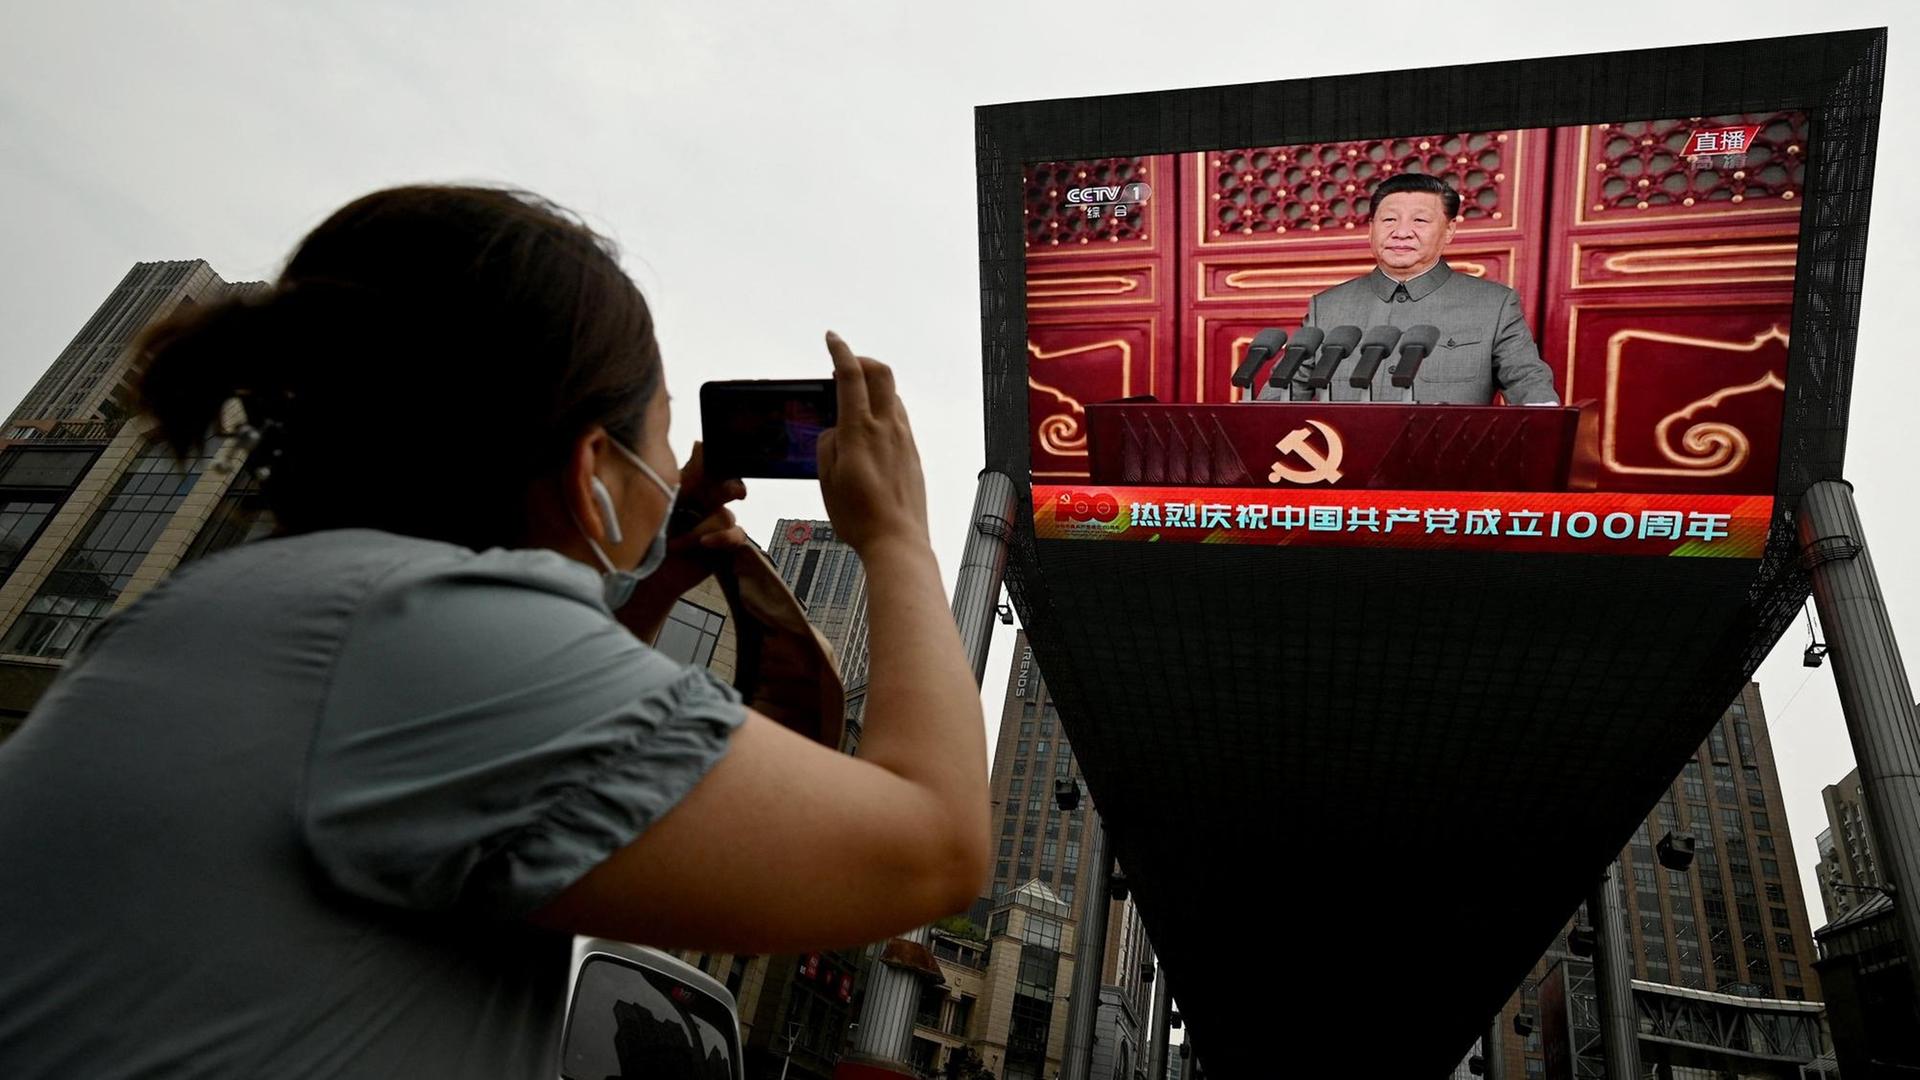 Eine Frau fotografiert eine Rede vom chinesischen Präsidenten Xi Jinping auf einem grossen Bildschirm auf der Strasse in Beijing während der 100-Jahres-Feier der kommunistischen Partei. China, 1.Juli 2021.